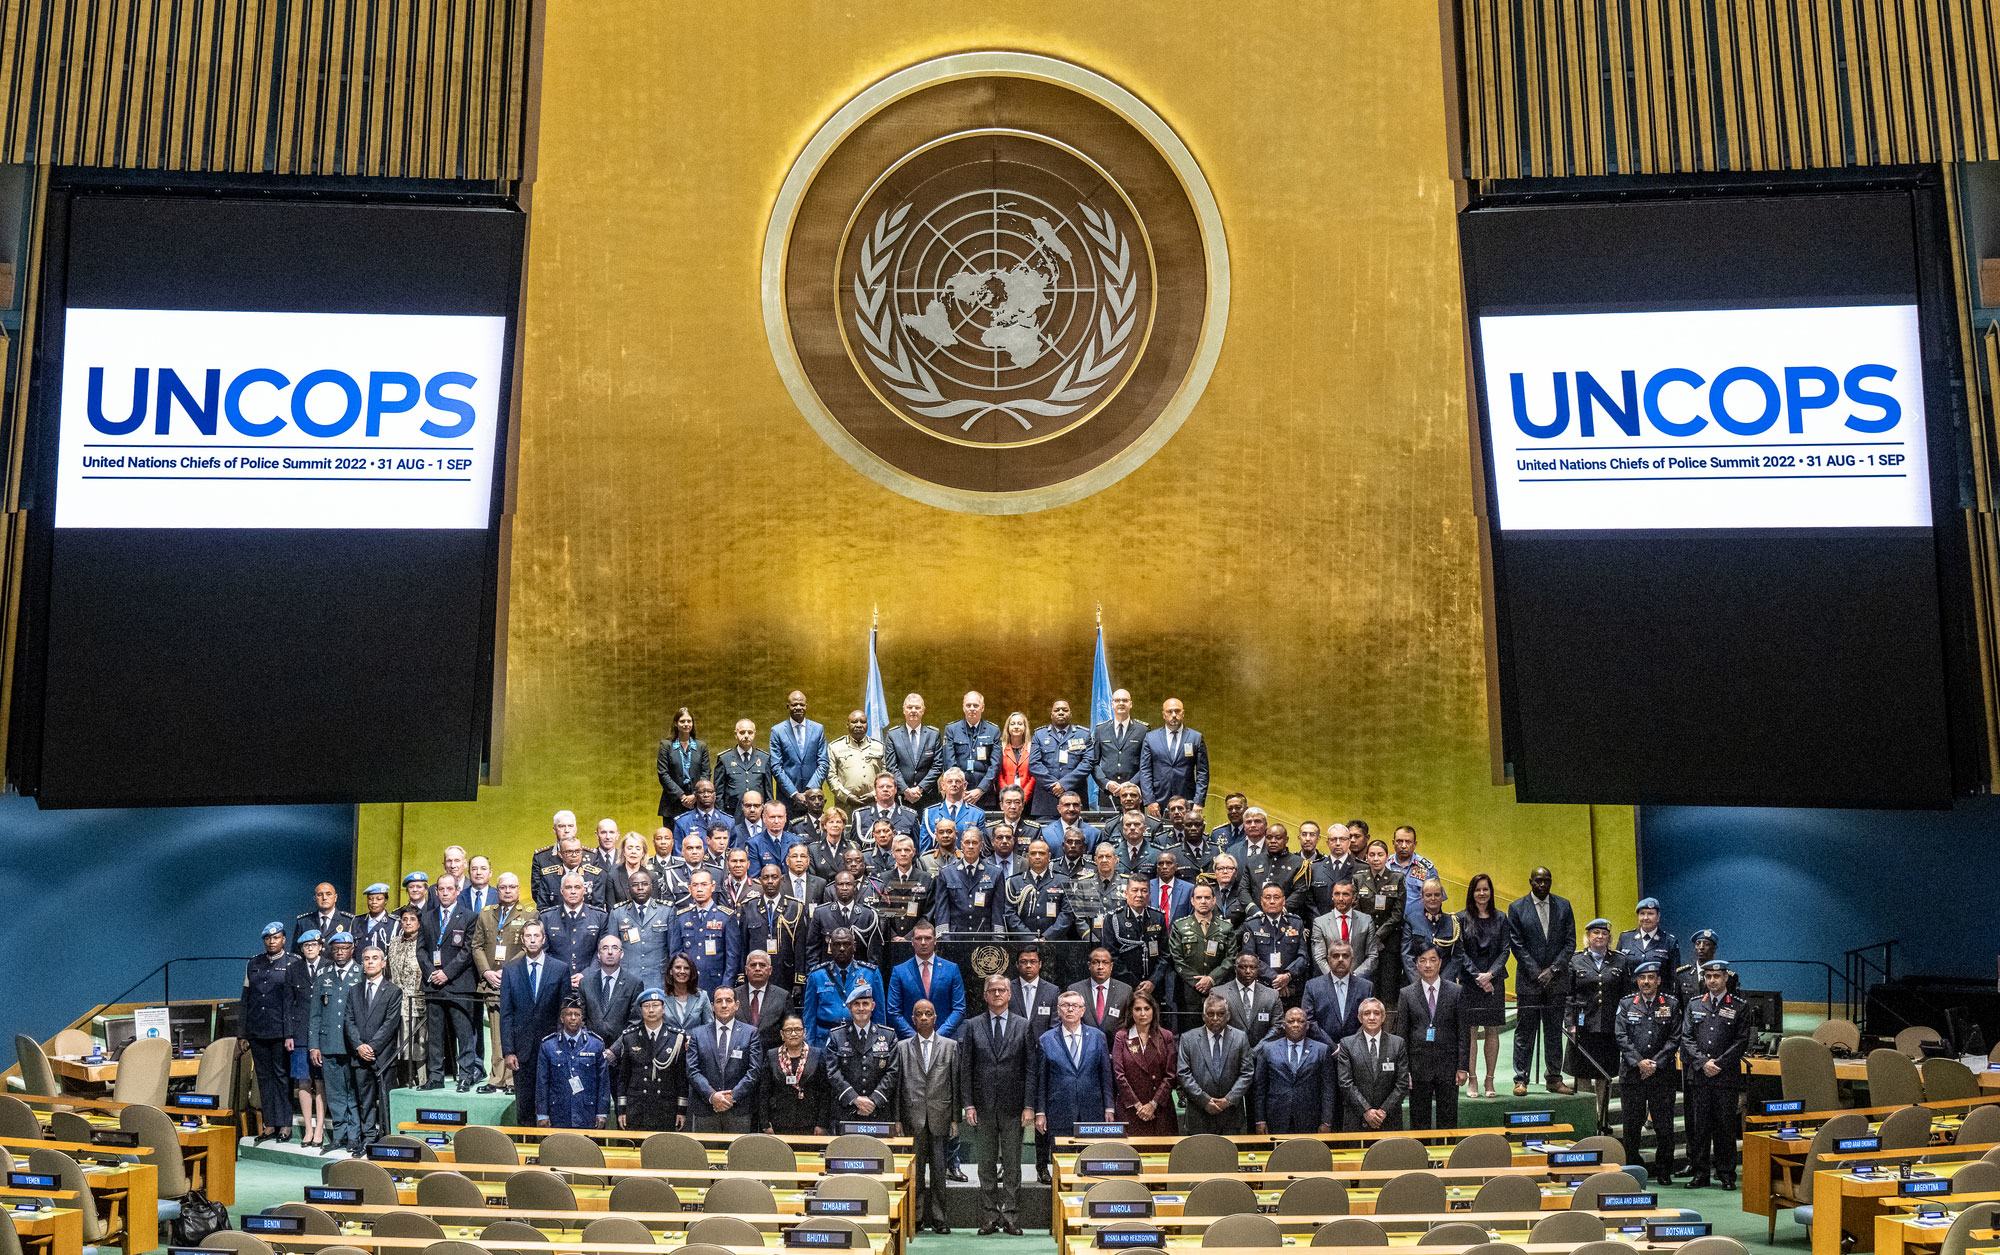 صورة جماعية للمشاركين في قمة الأمم المتحدة الثالثة لرؤساء الشرطة (UNCOPS).